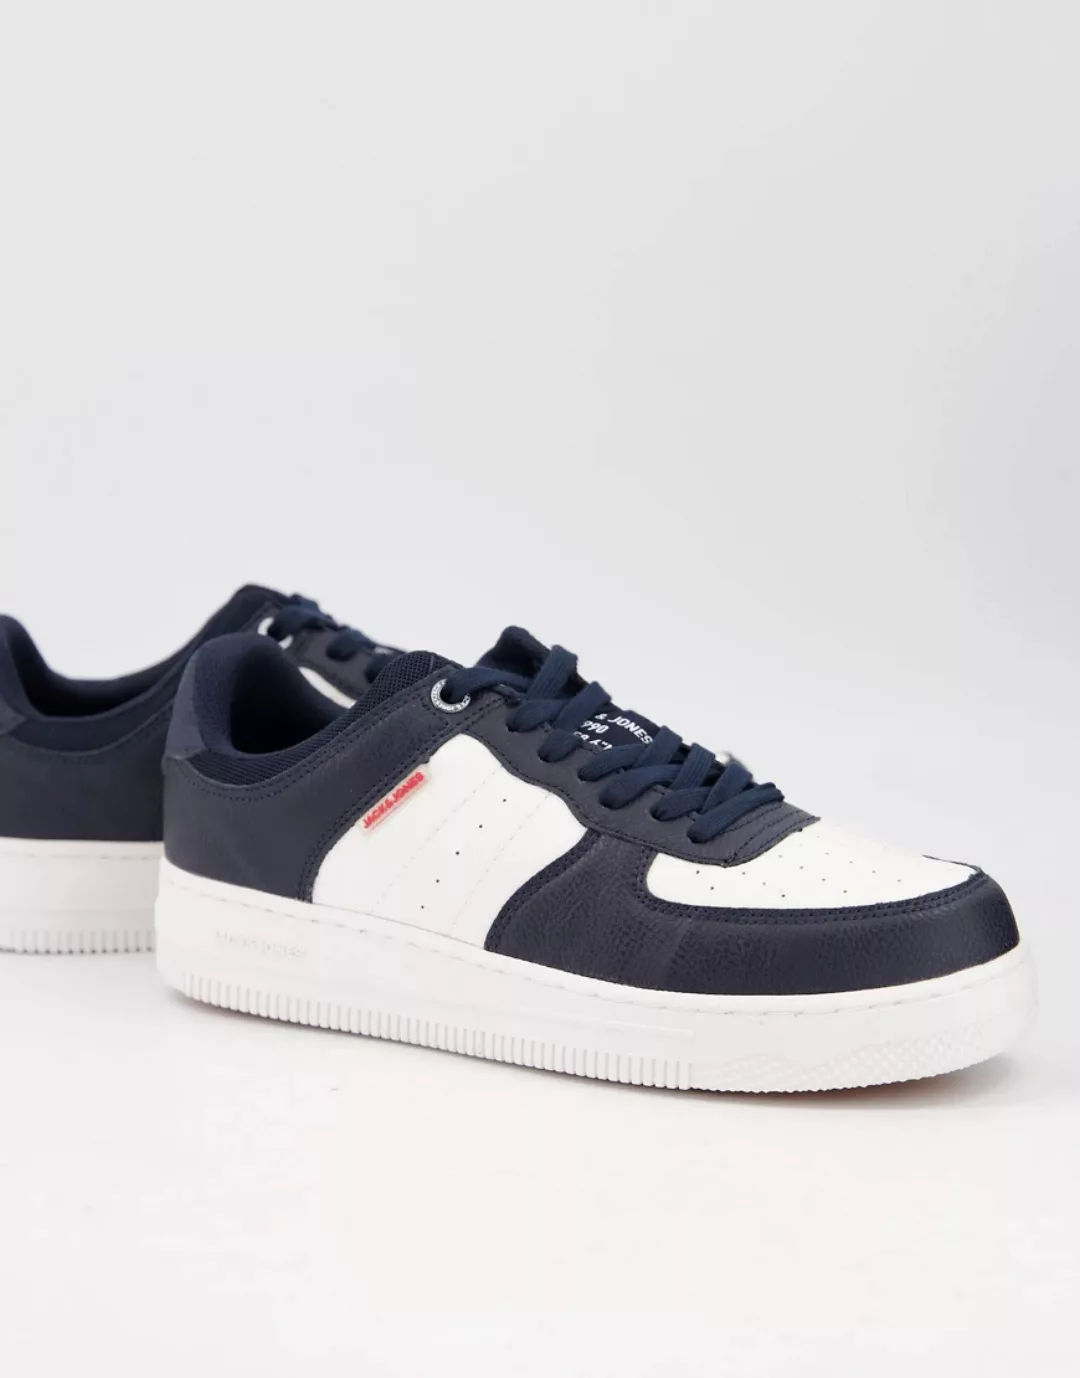 Jack & Jones – Sneaker mit dicker Sohle in Marineblau und Weiß günstig online kaufen